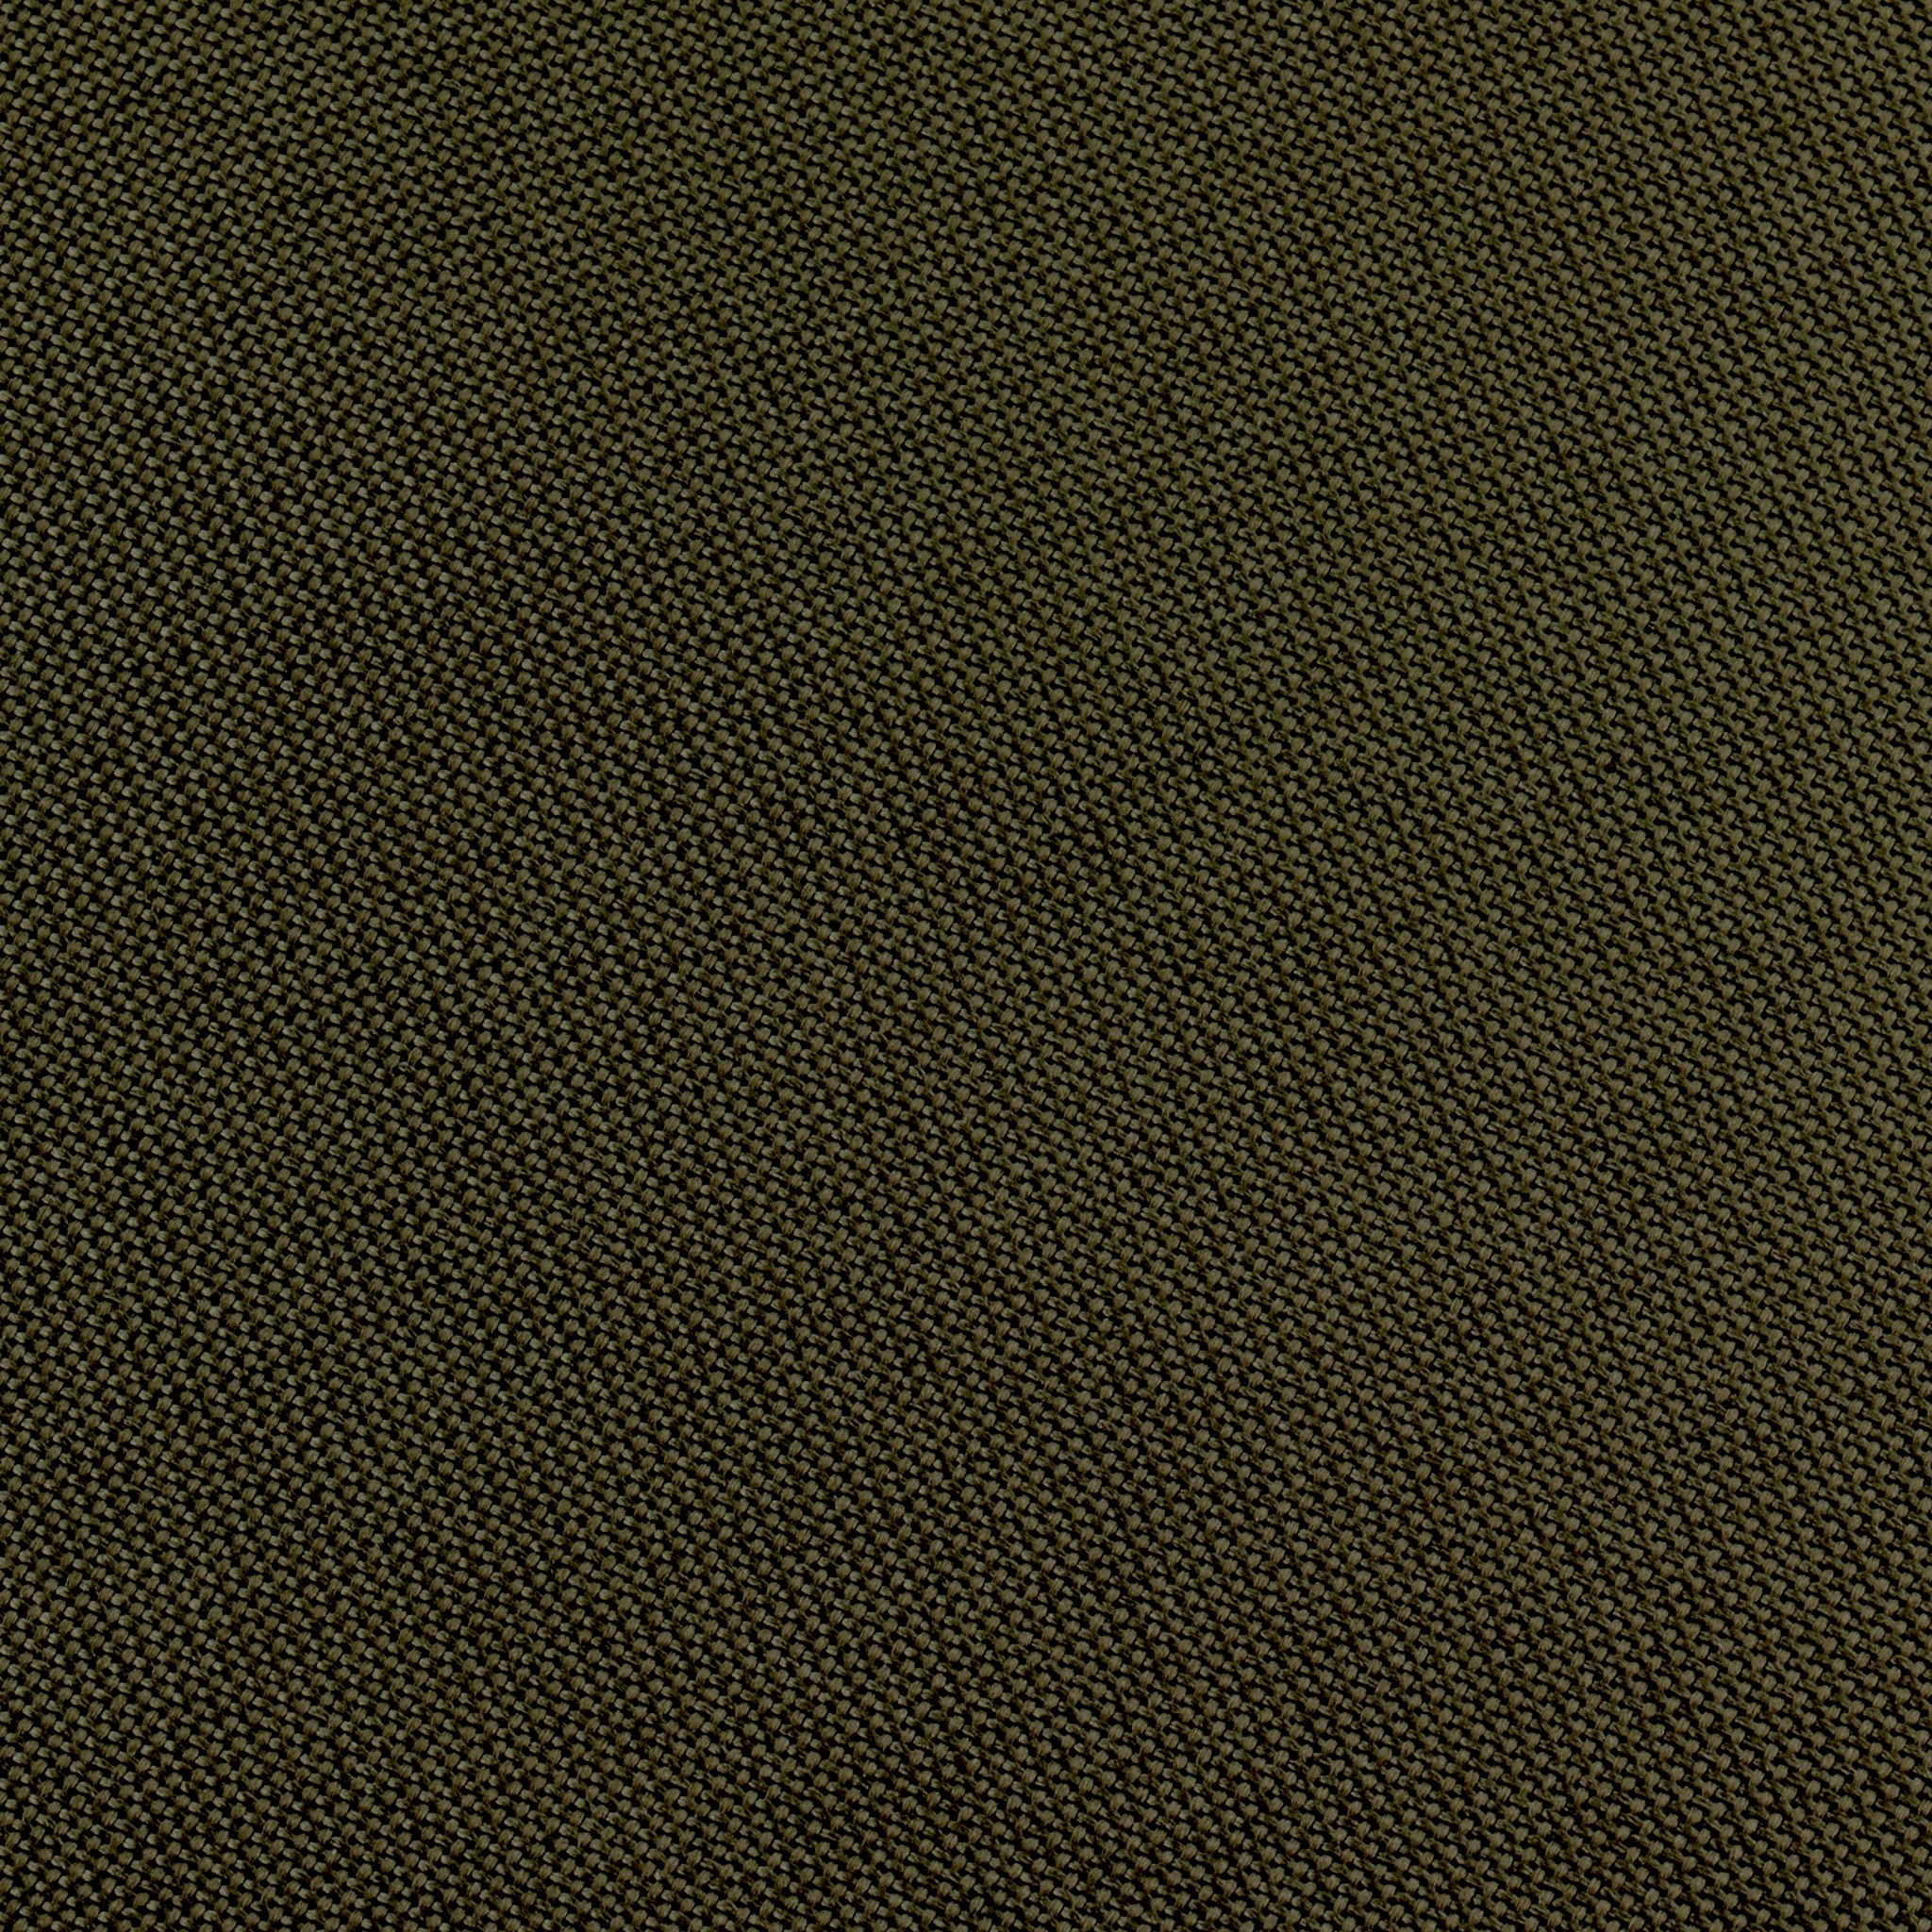 Ткань оксфорд 600D с защитным покрытием 1000 мм цв. темно-оливковый - 1 пог. м